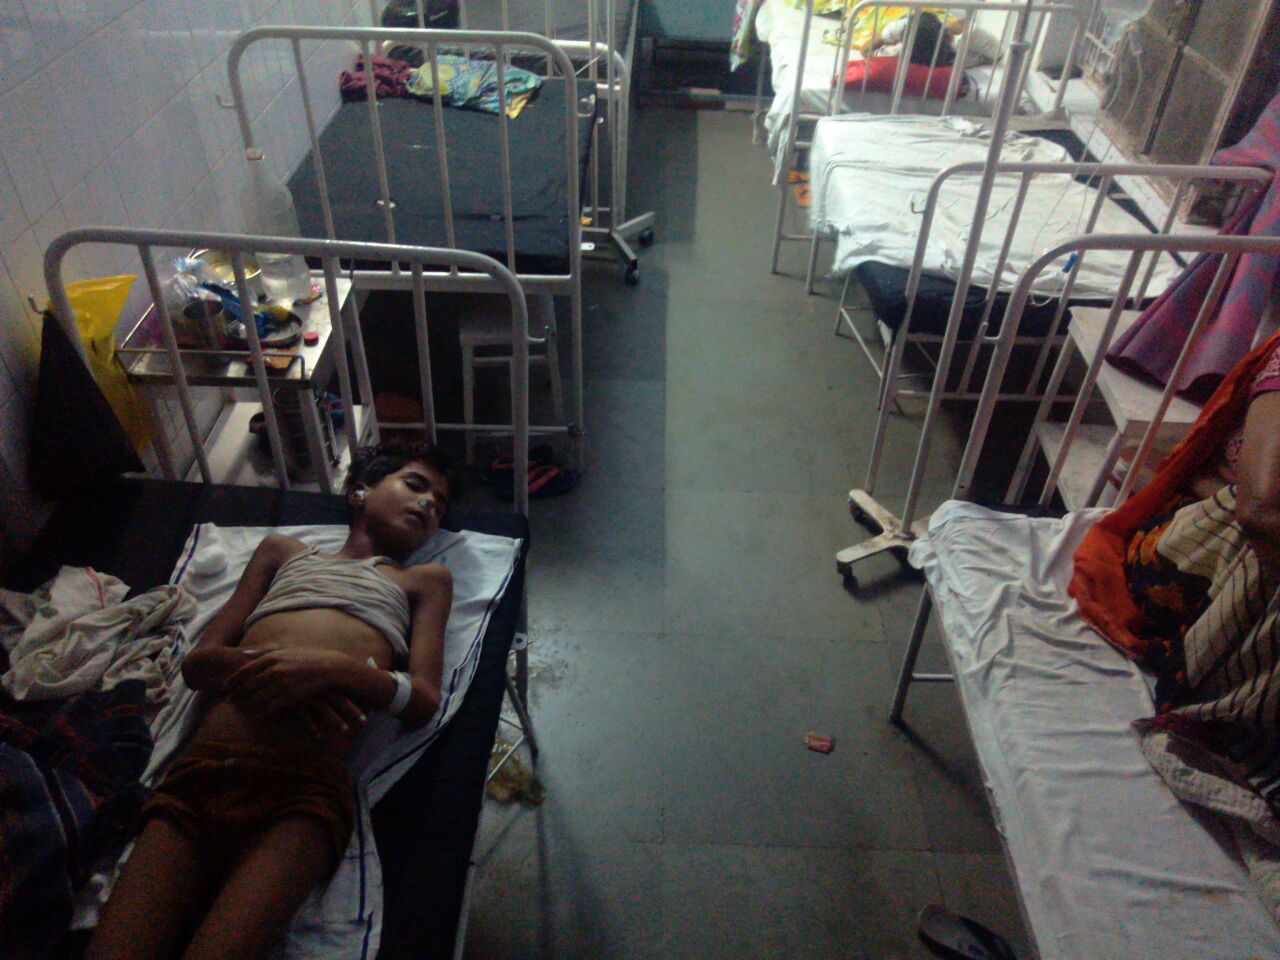 ज़िला चिकित्सालय झांसी के चाइल्ड वार्ड में 14 वर्षीय बच्चे की मौत, परिजनों ने डॉक्टरों पर लगाया लापरवाही बरतने का आरोप | New India Times